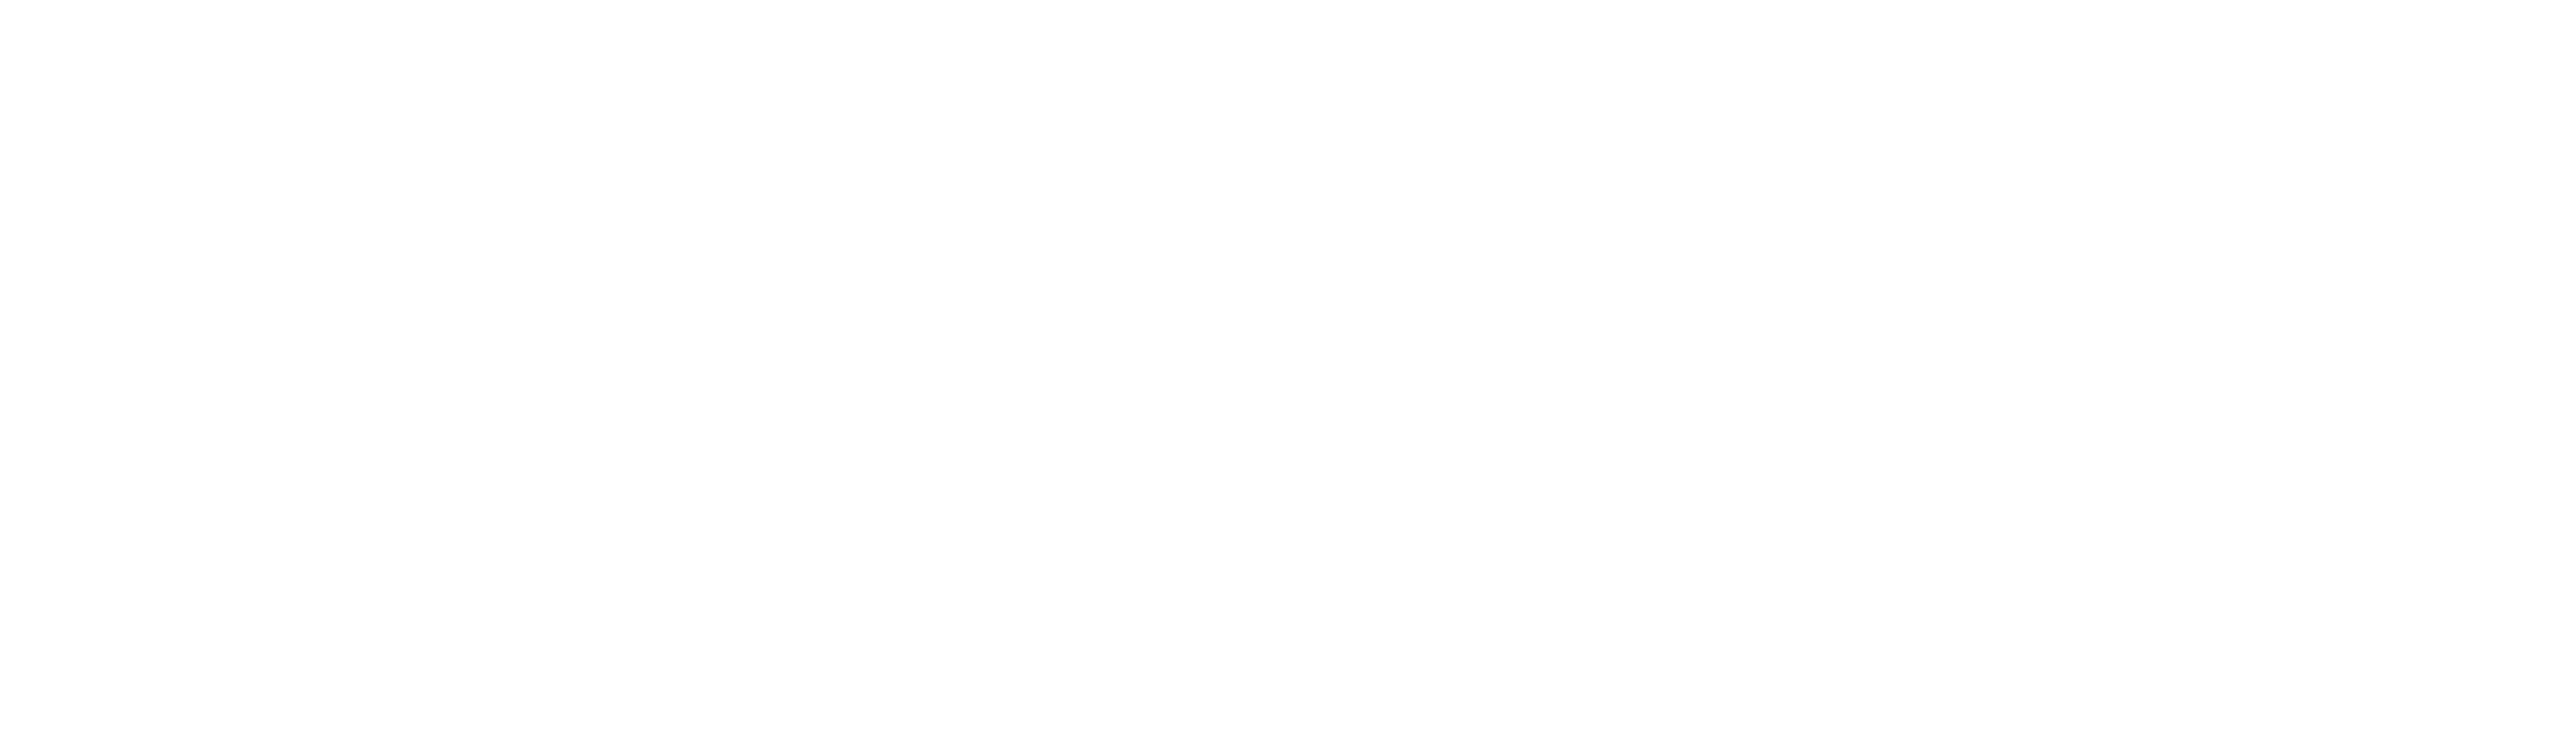 TaskEasy Contractor App